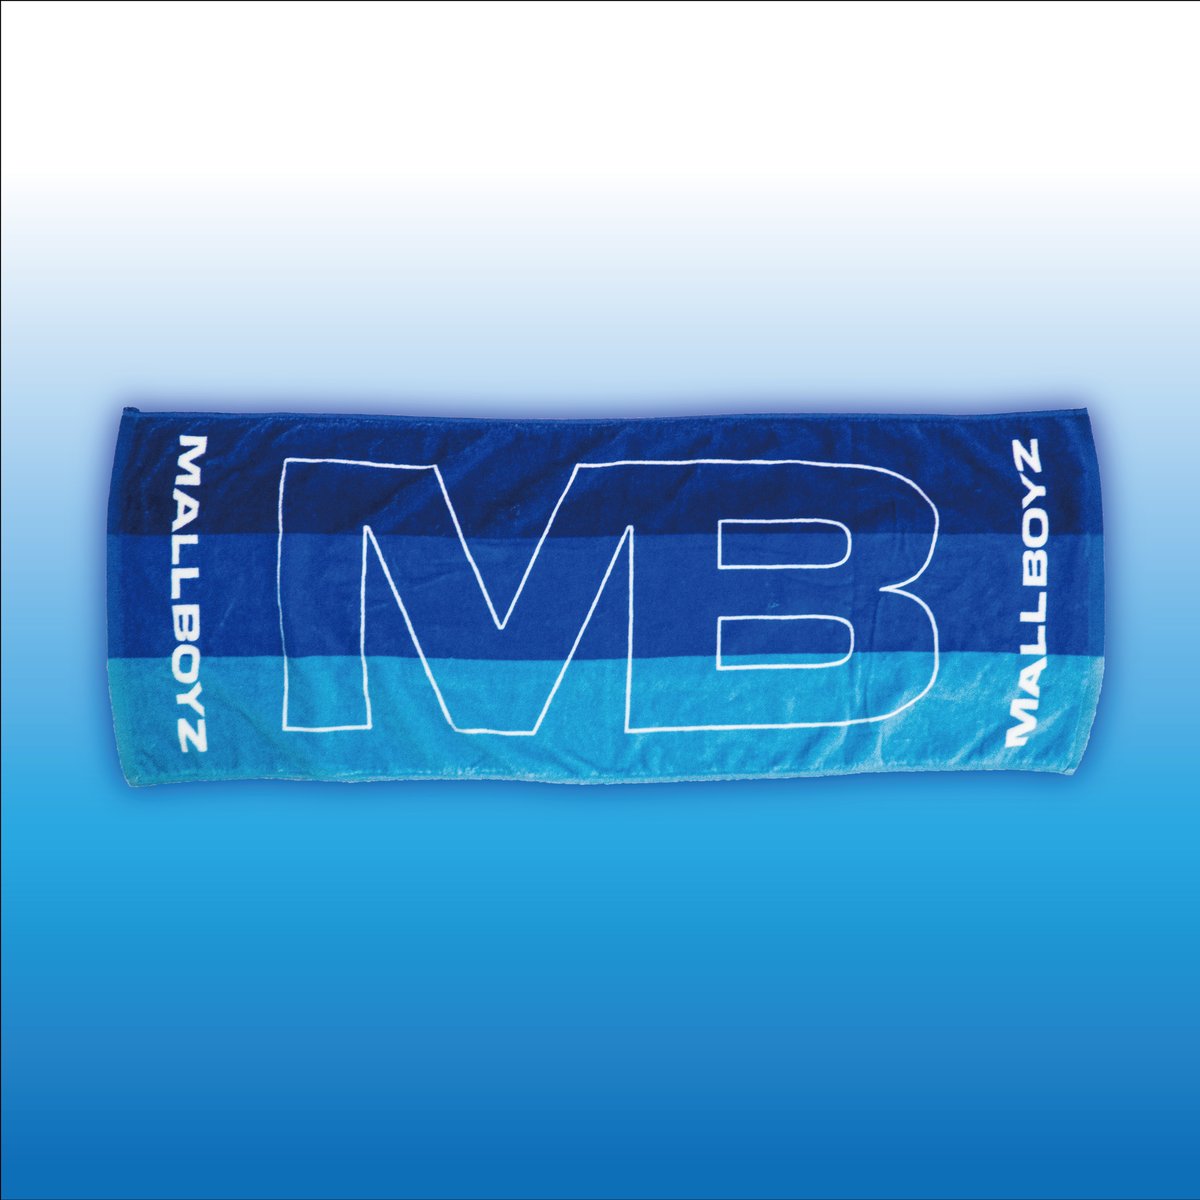 MALLBOYZ MB Smooth Towel (blue)